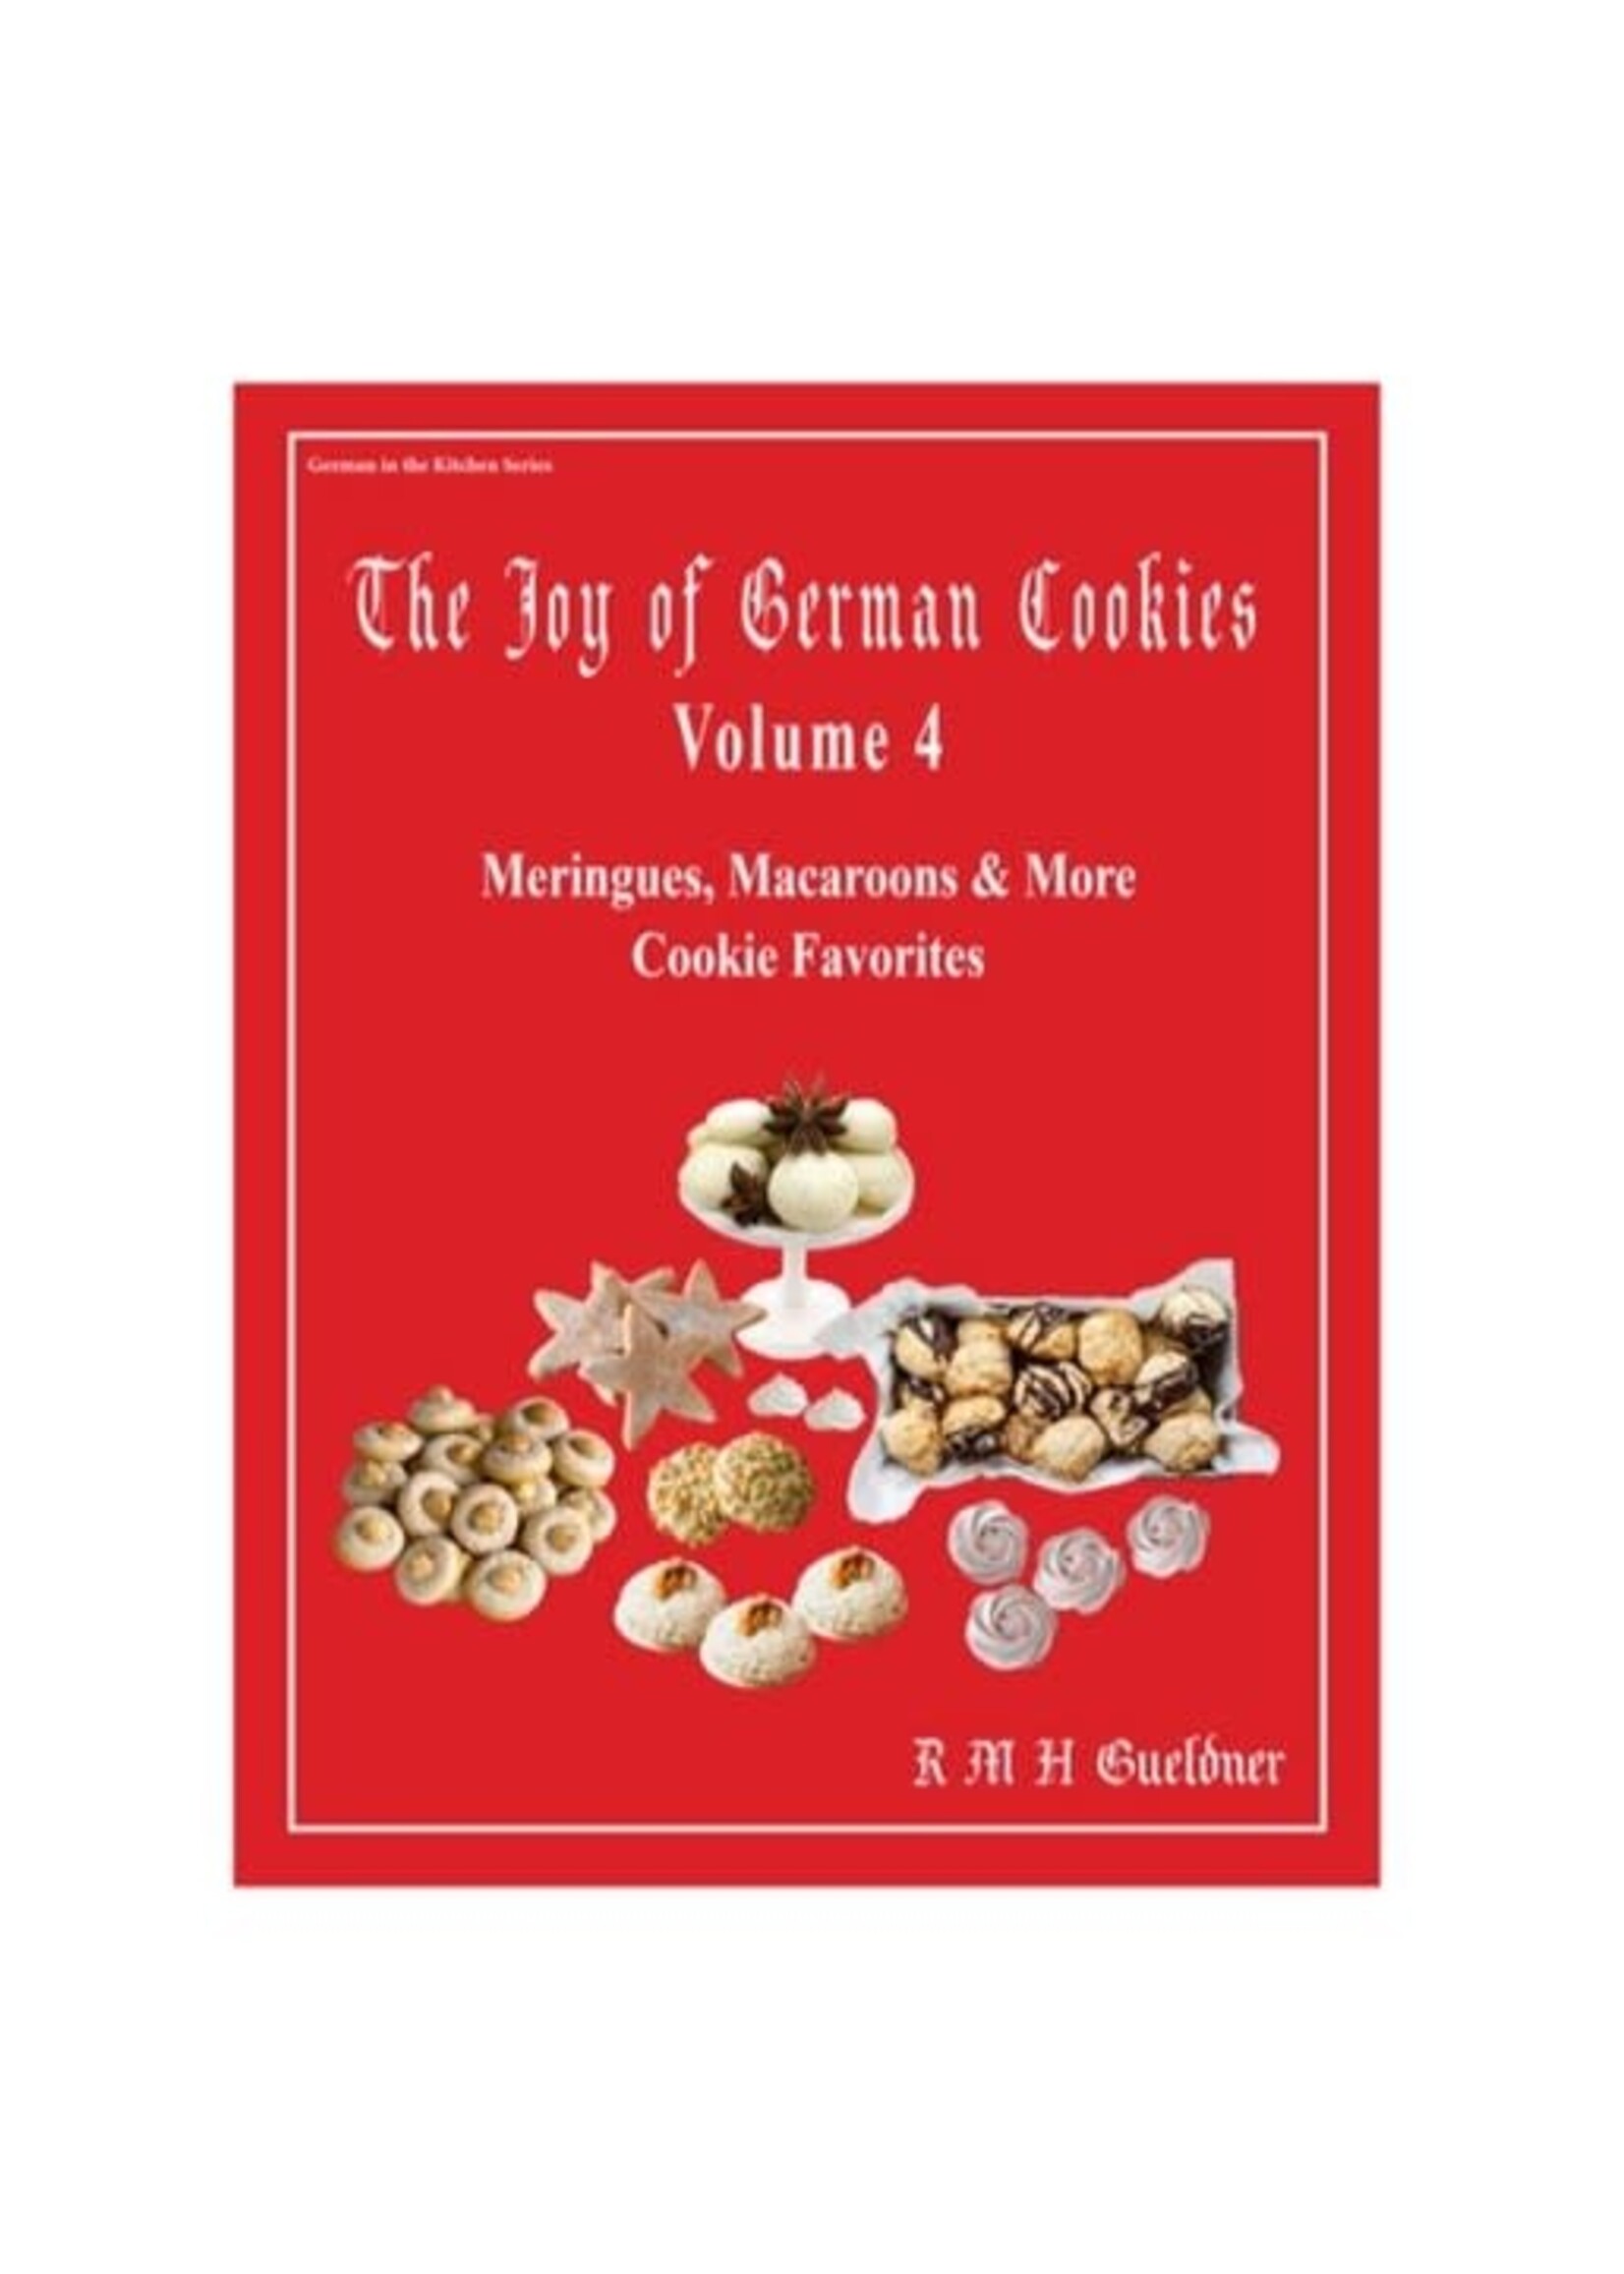 The Joy of German Cookies, Volume 4: Meringues, Macaroons & More Cookies